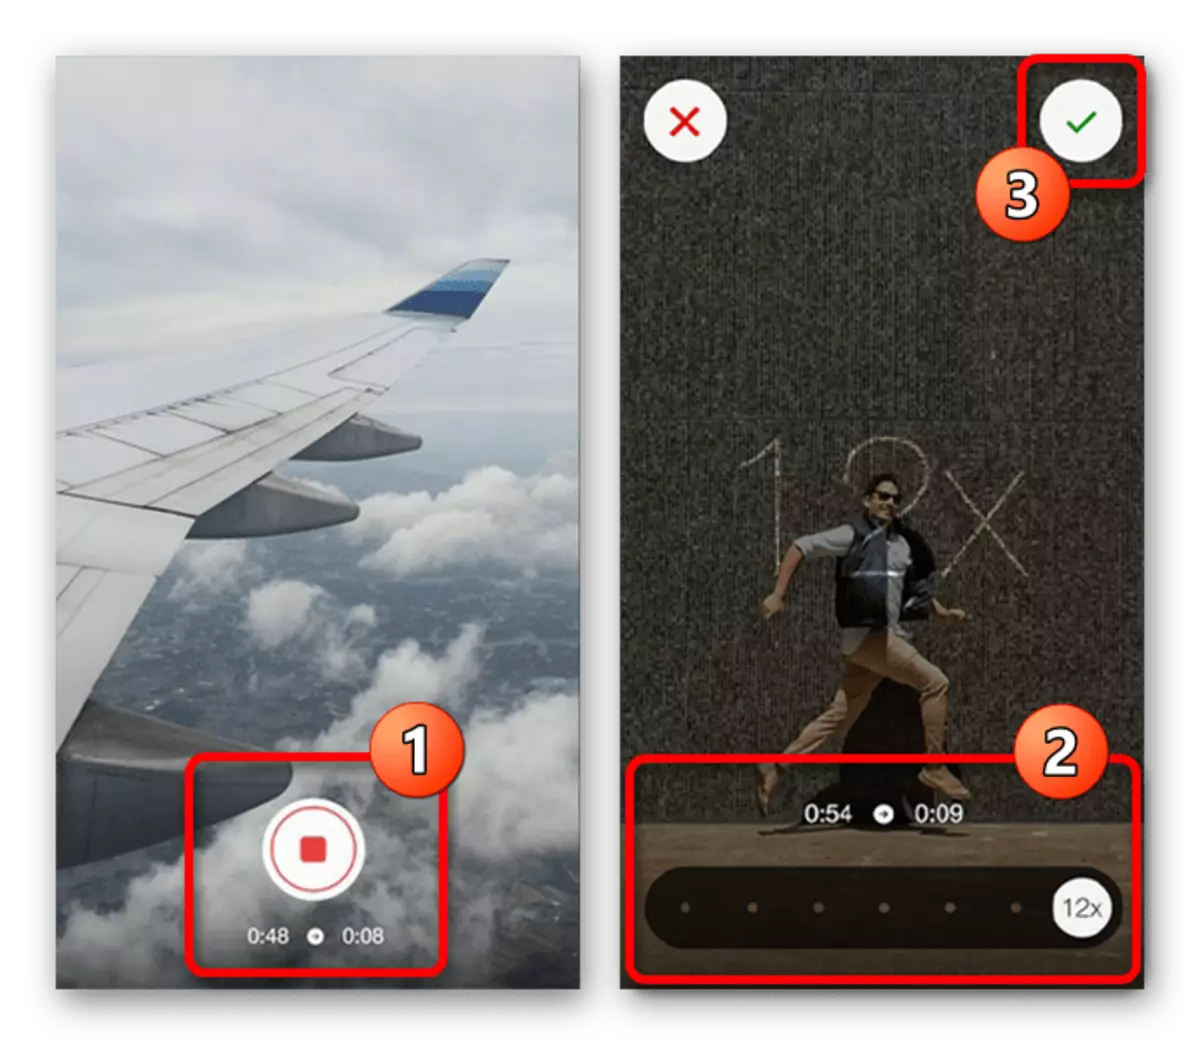 Képes menteni a gyorsított videót az Instagram alkalmazáshoz a hiperlapse alkalmazásban